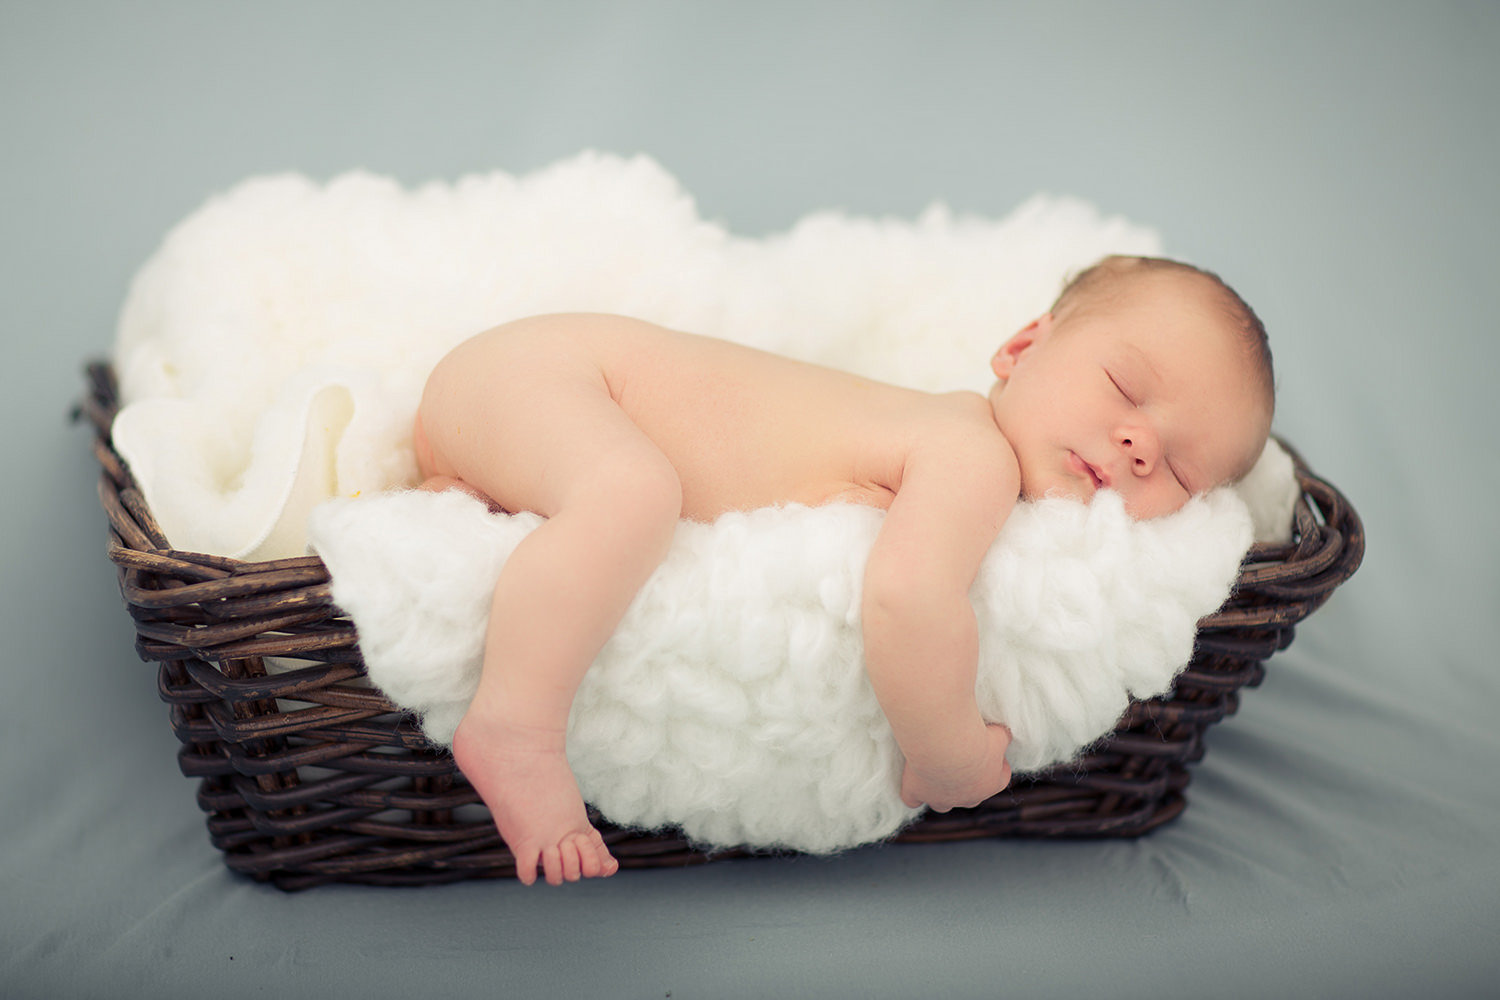 san diego newborn photographer | newborn sleeping in wicker basket with white blanket